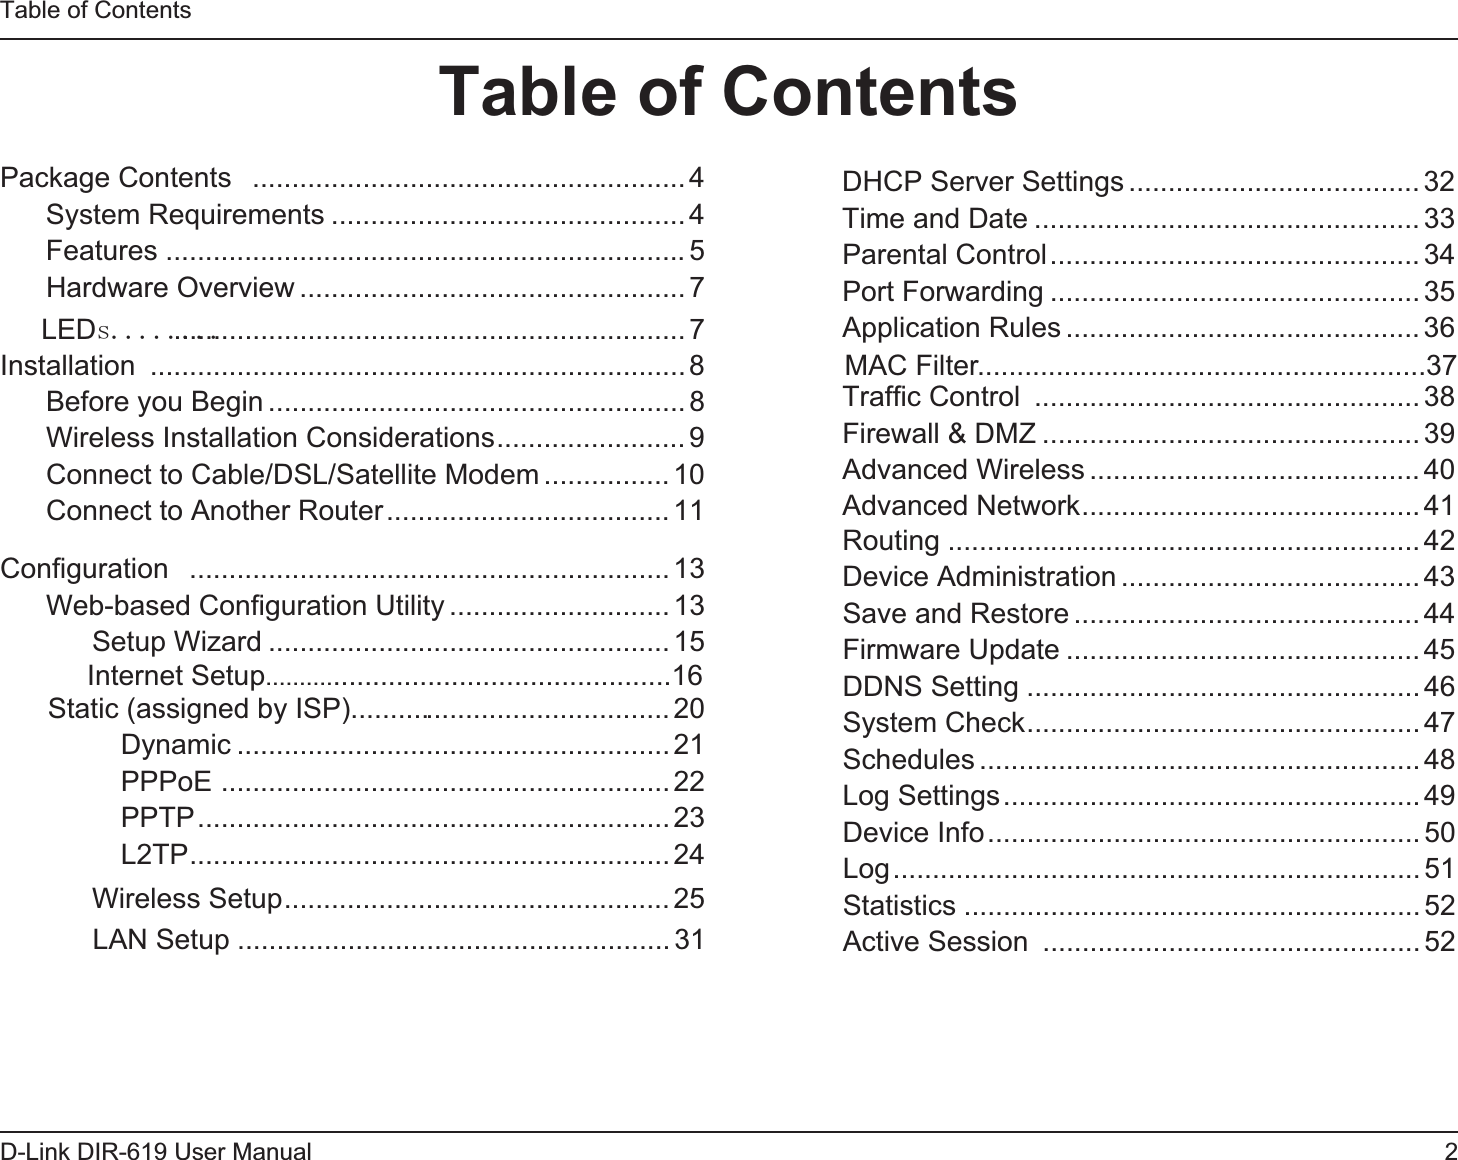      V      Conﬁguration  Web-based Conﬁguration Utility                               Table of Contents